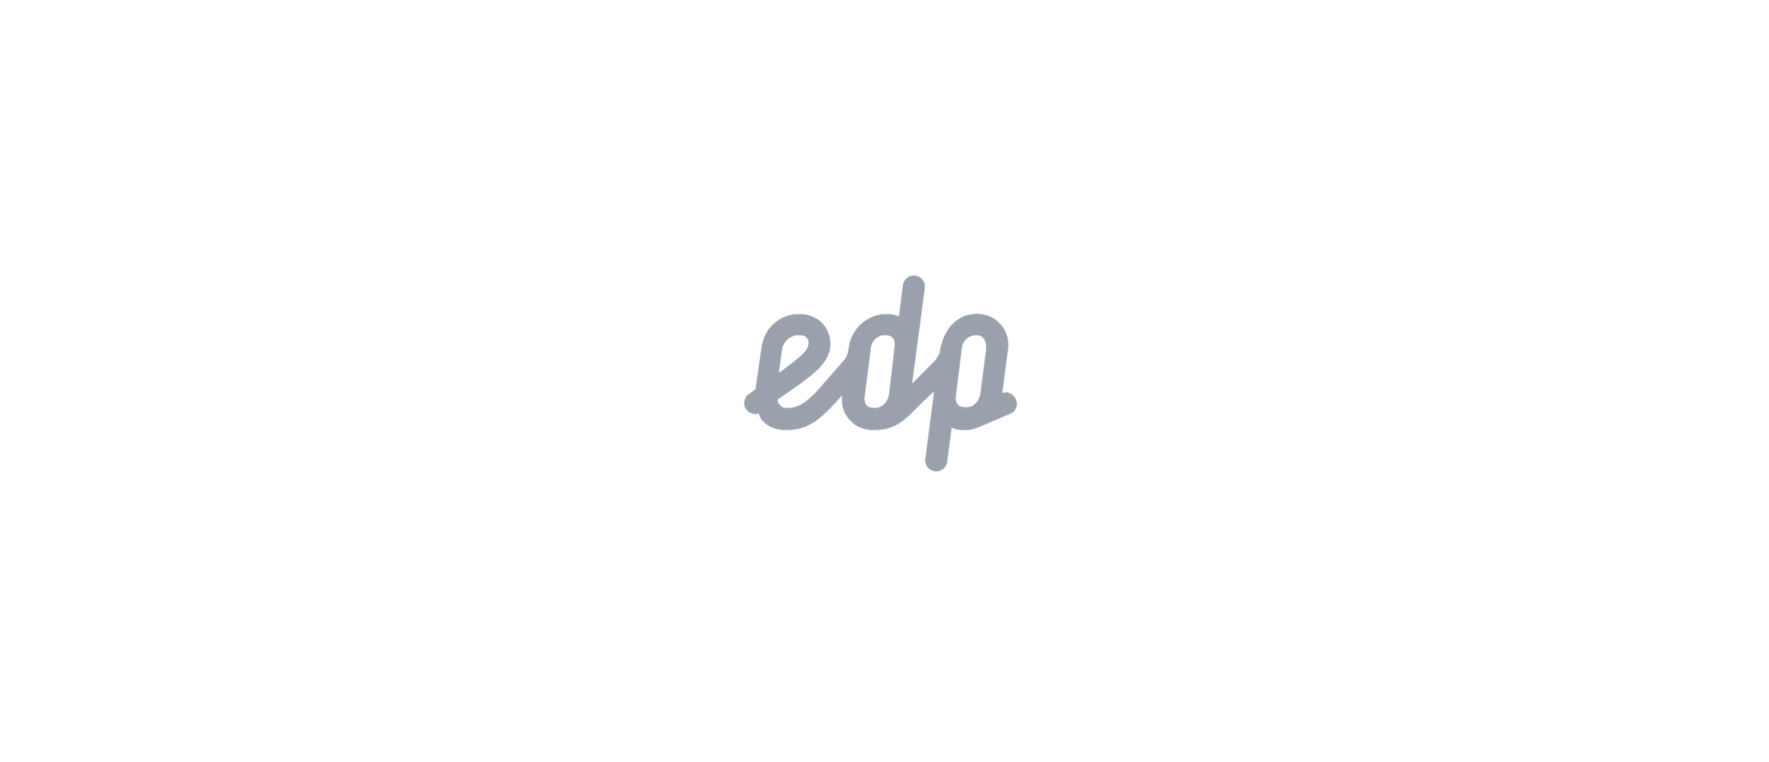 edp-logo.png